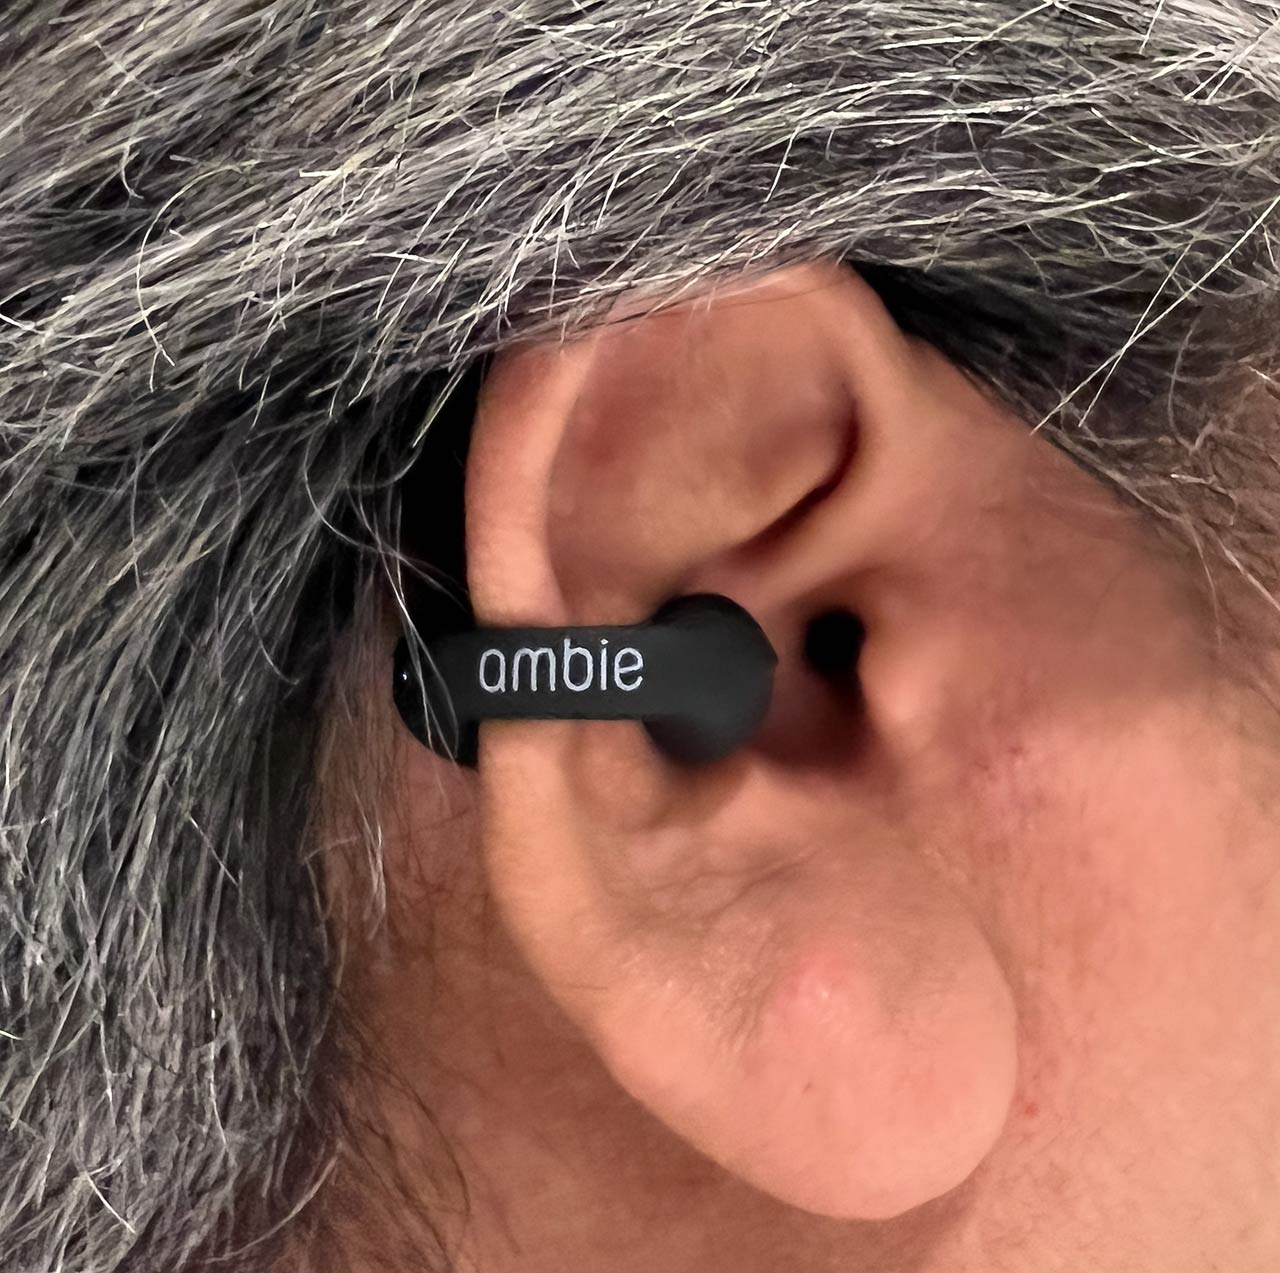 耳を塞がない完全ワイヤレスオープン型イヤホン Ambie を試す 西田宗千佳 Engadget 日本版